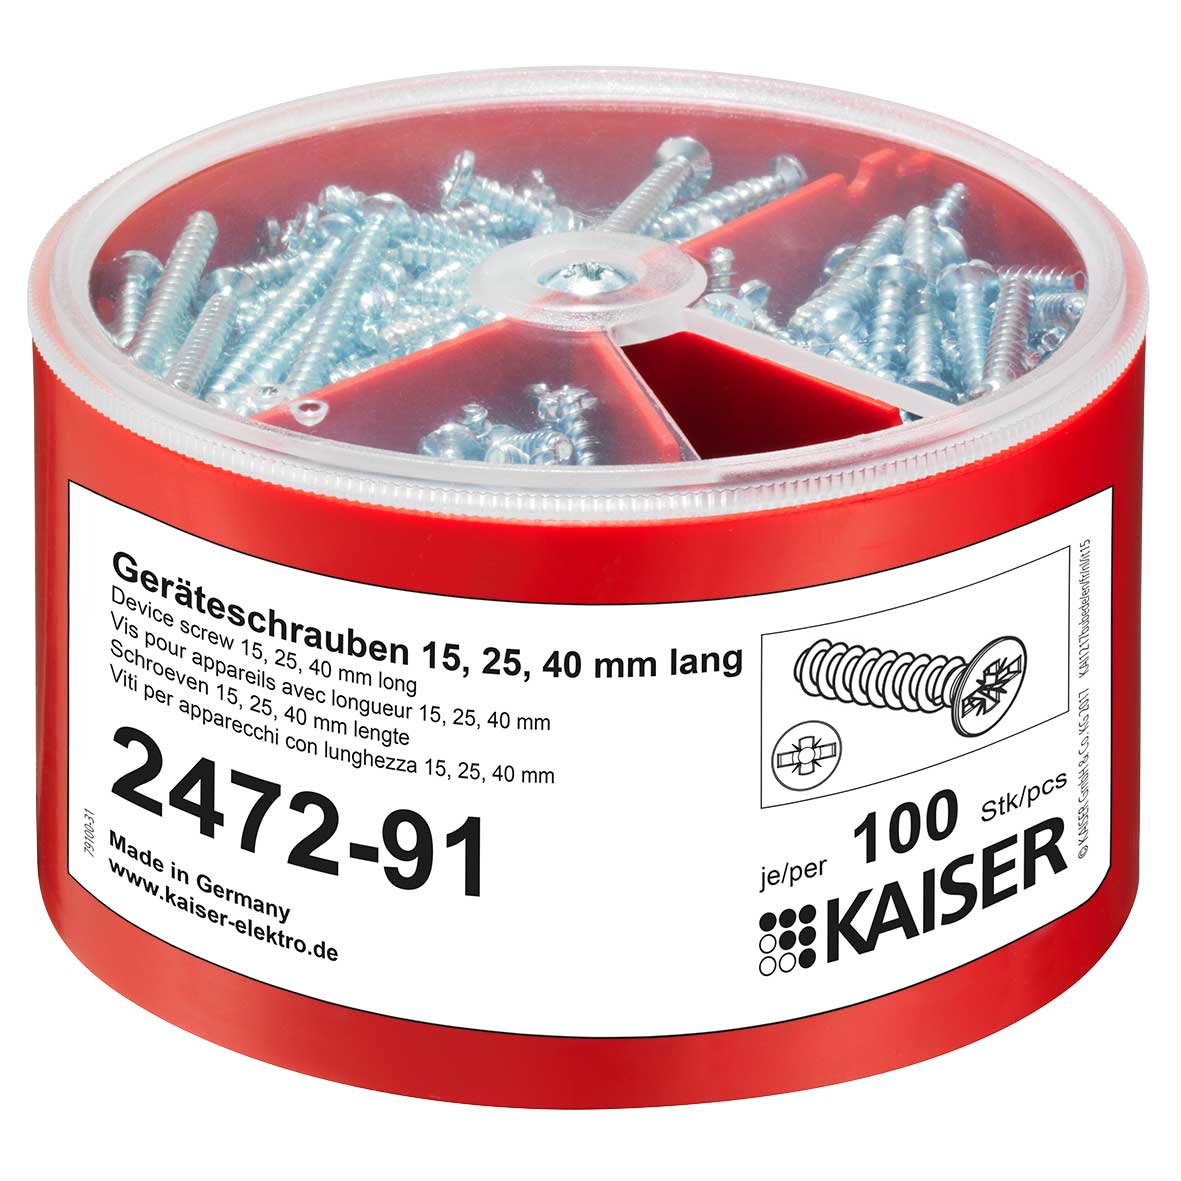 Kaiser Geräteschrauben-Box je 100 3,2x15/25/40 2472-91